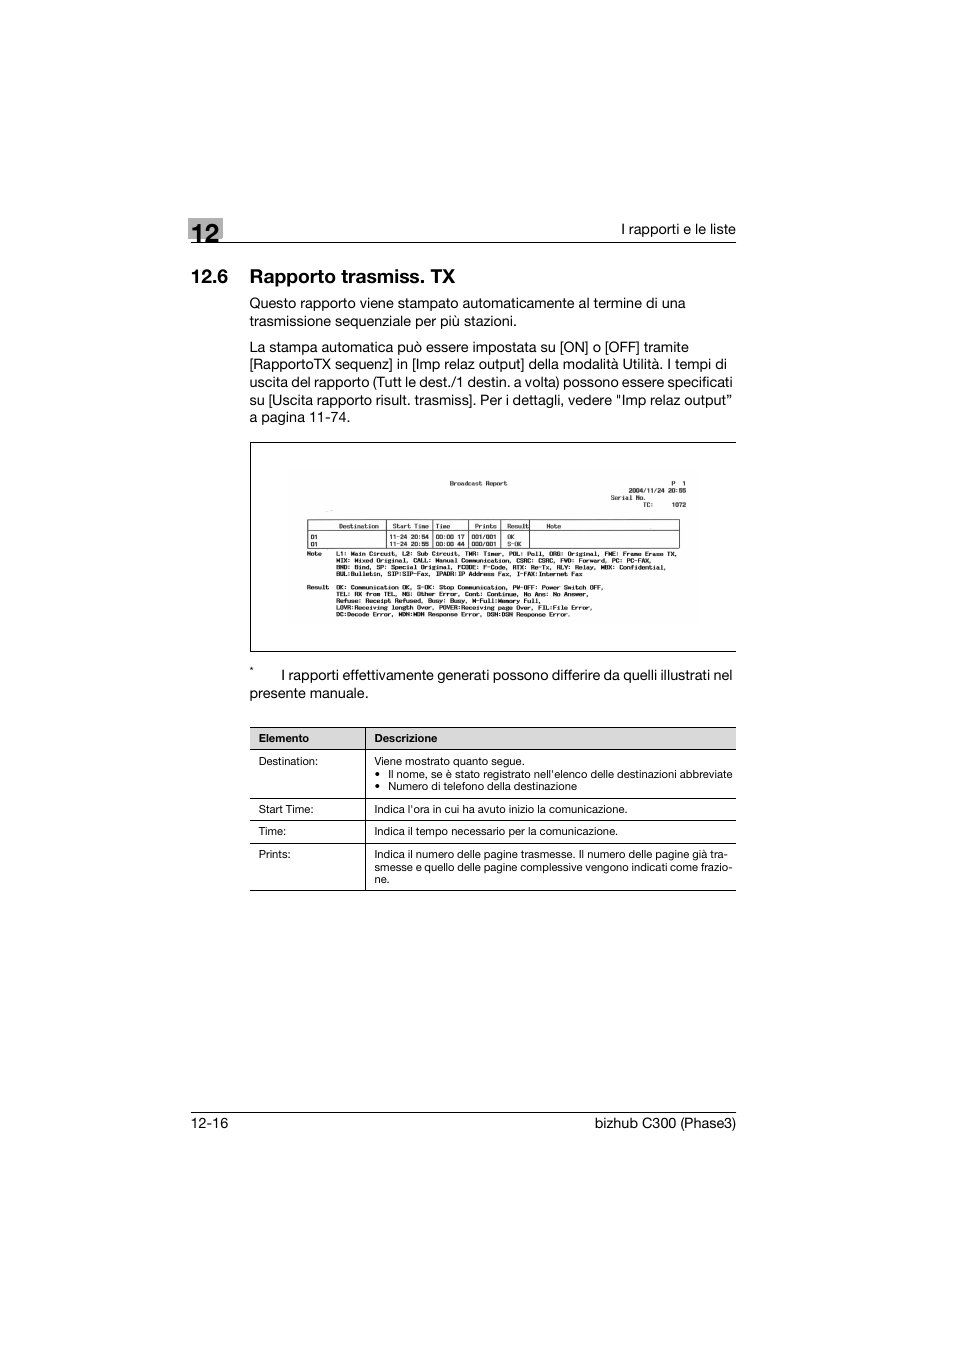 6 rapporto trasmiss. tx, Rapporto trasmiss. tx -16 | Konica Minolta bizhub C353CS Manuale d'uso | Pagina 426 / 534